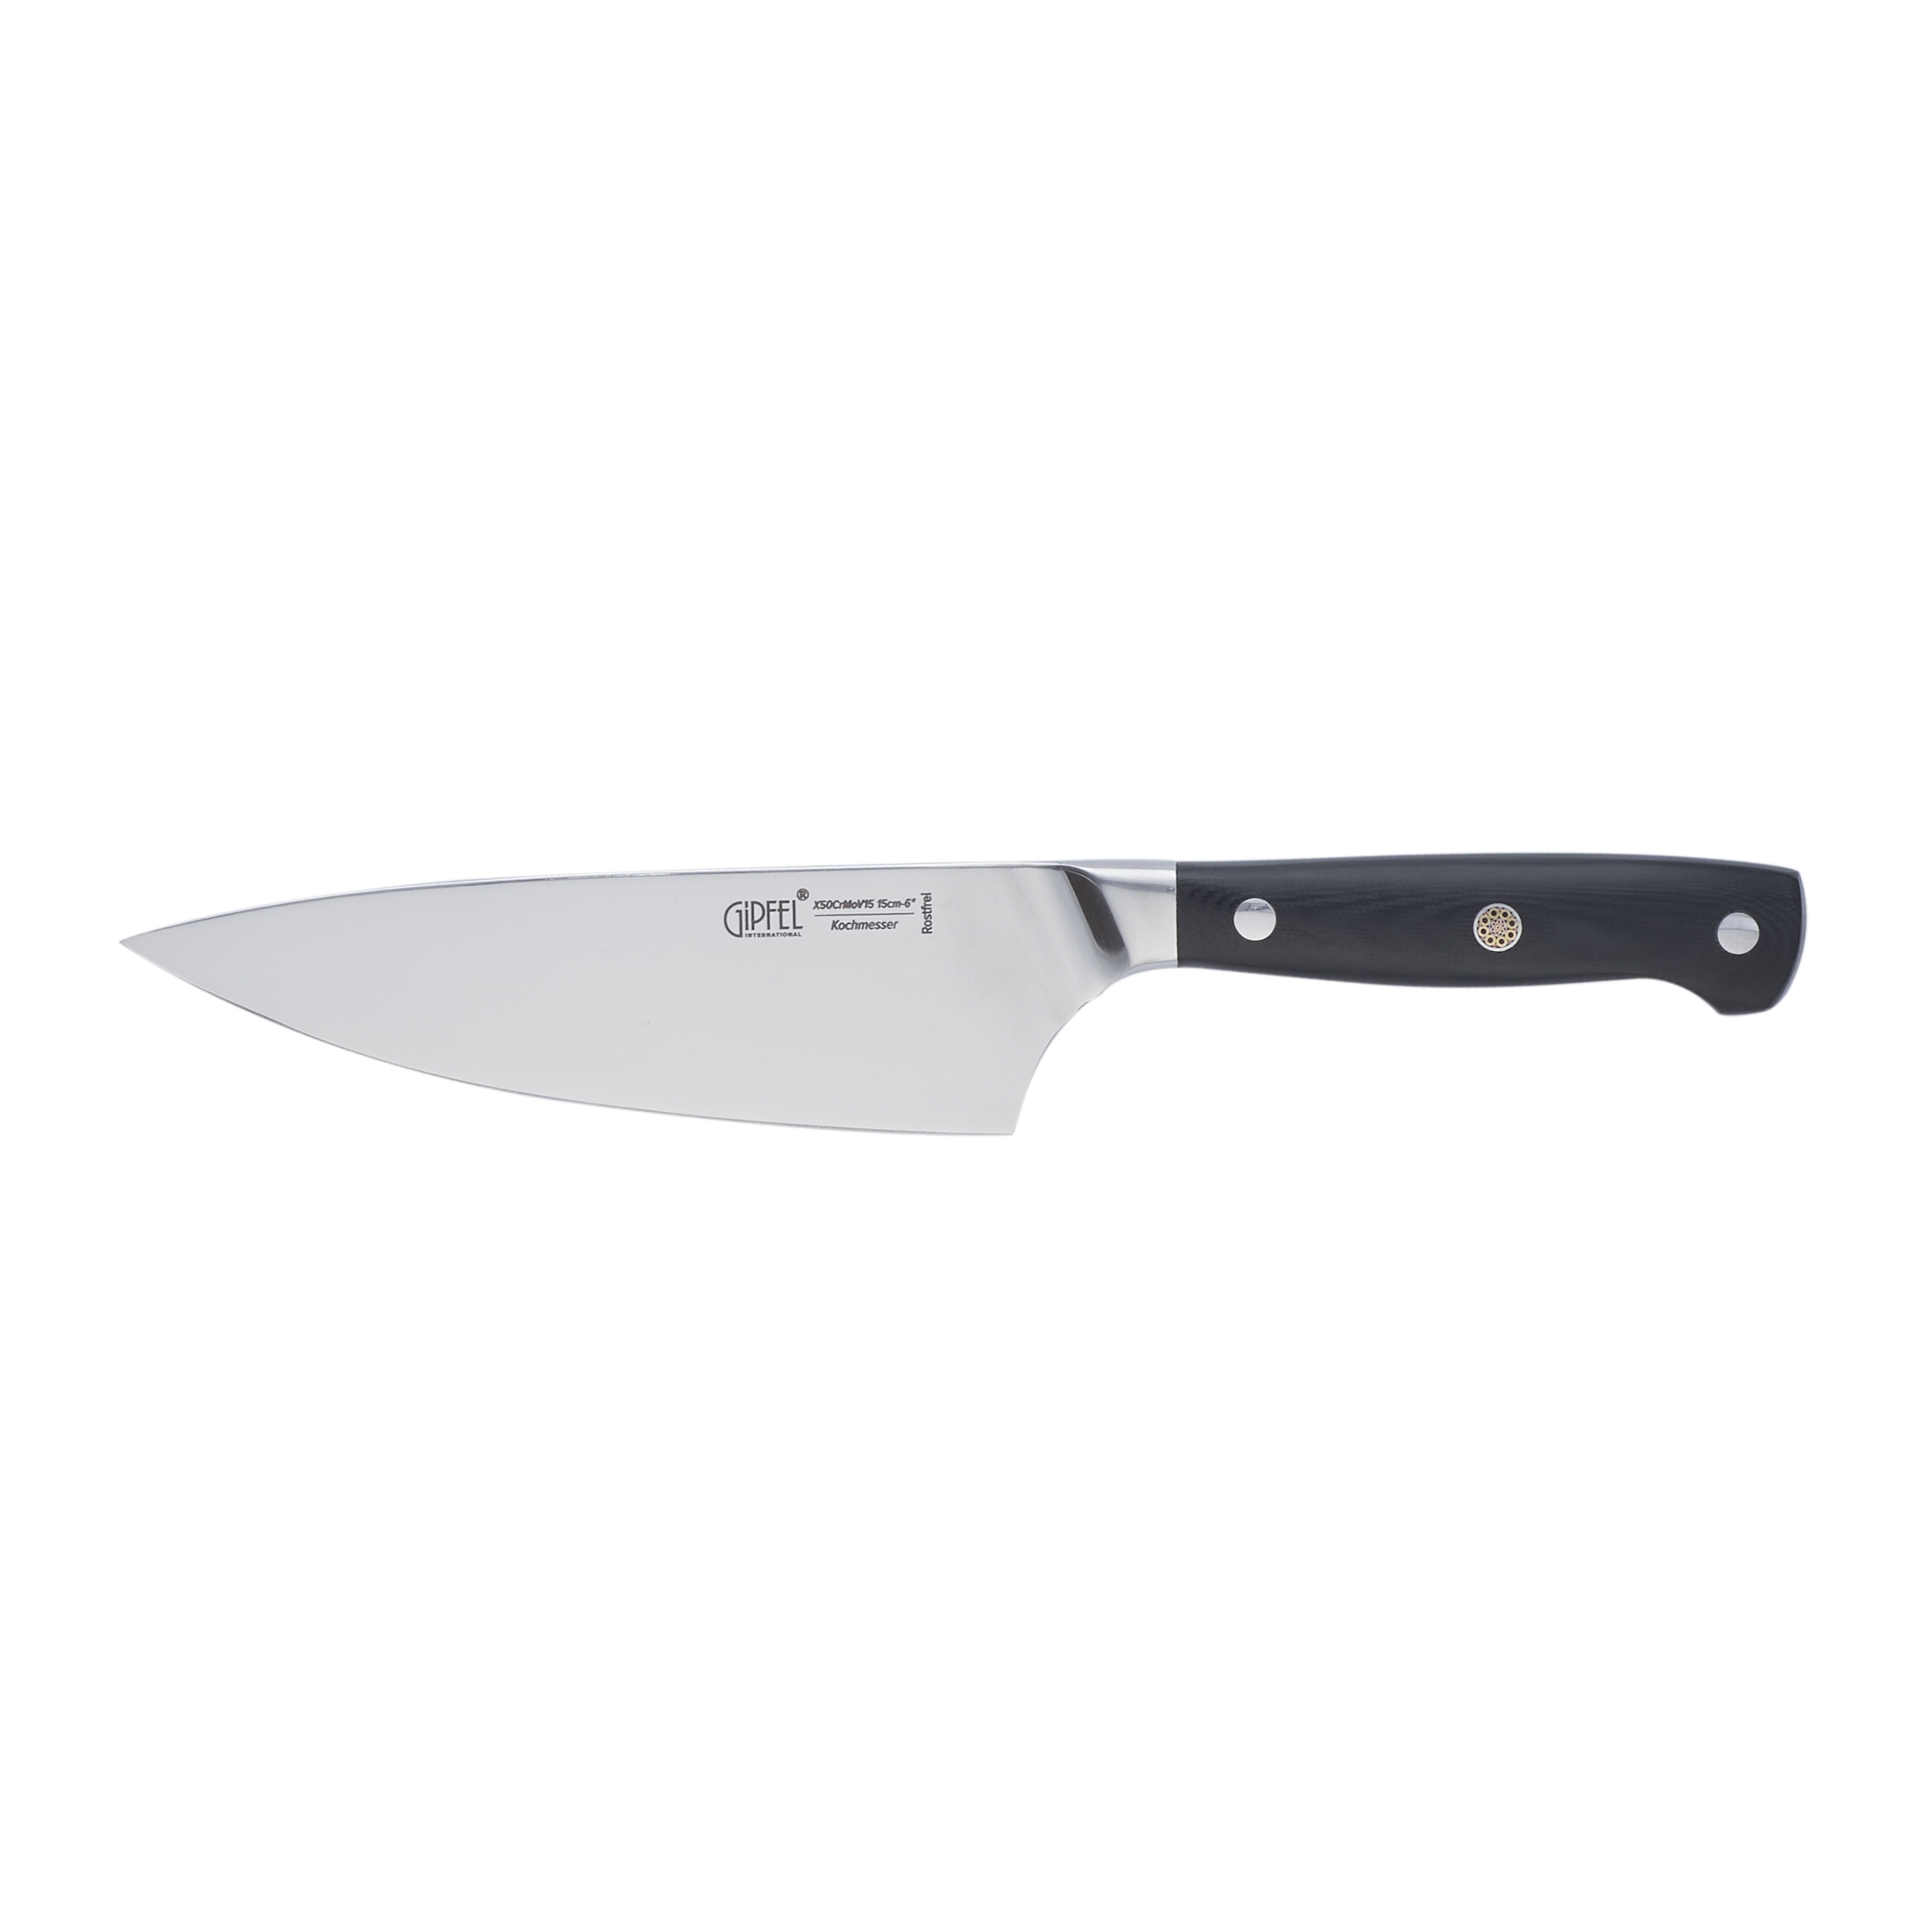 Нож поварской Gipfel New Professional 8648 15 см нож поварской gipfel mirella 6836 20 см